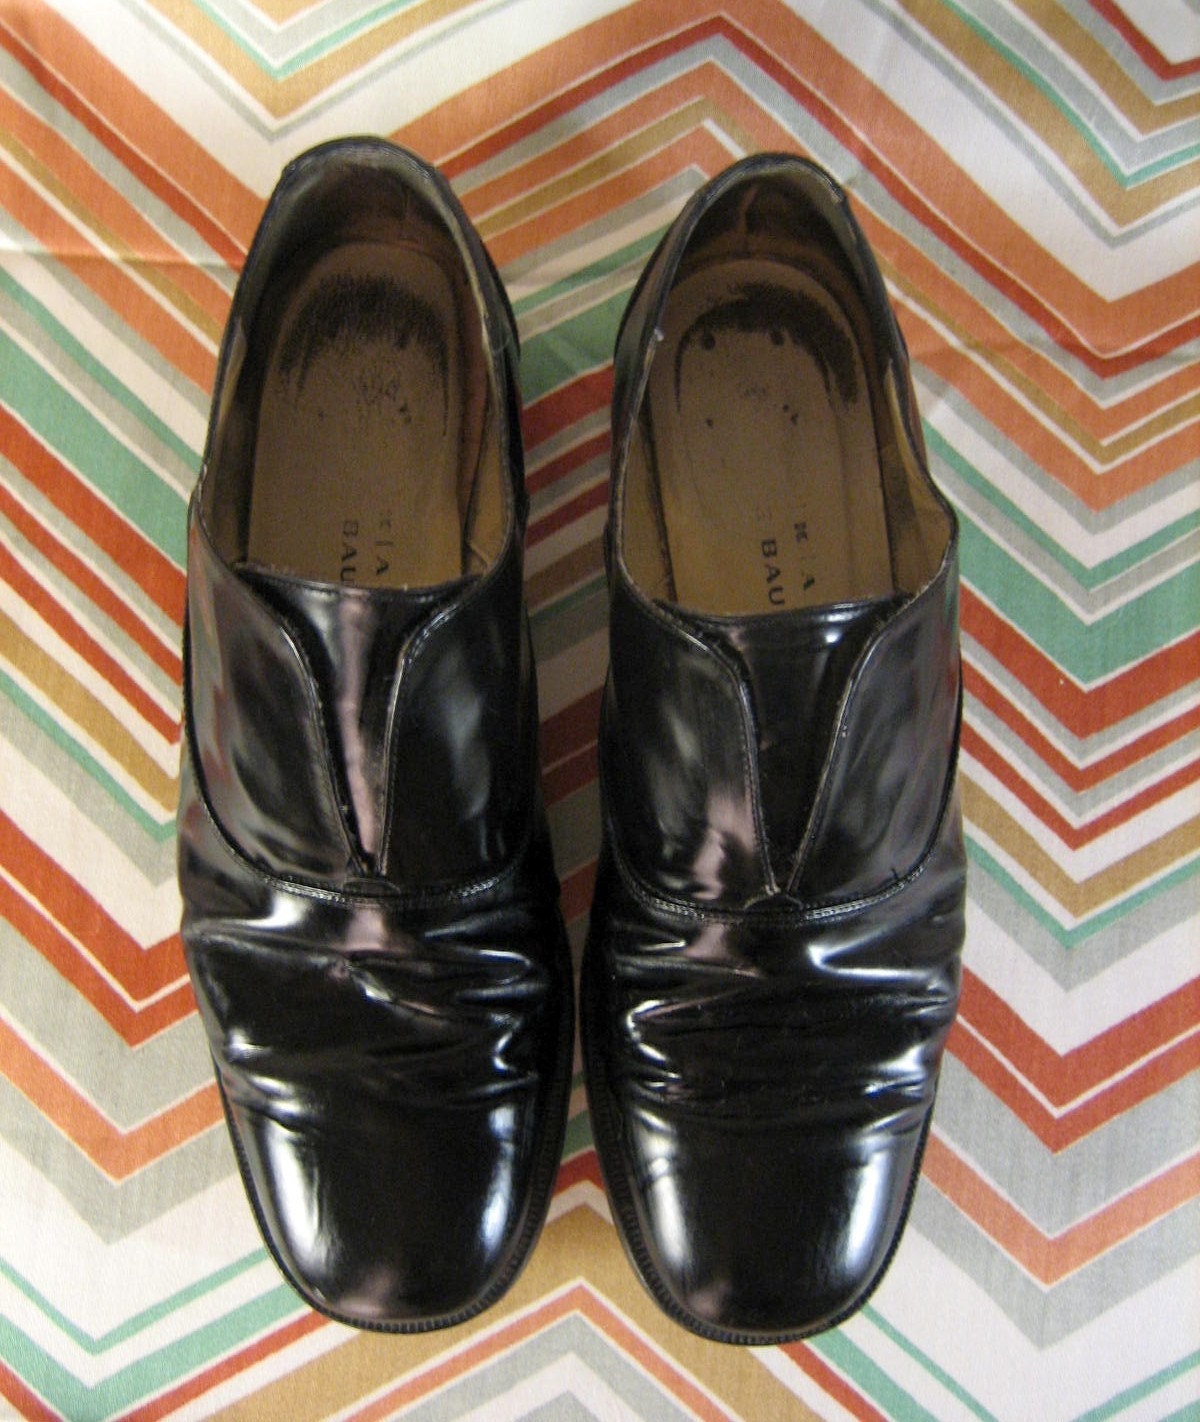 Vintage Men's Black Loafer Dress Shoes Size 9 